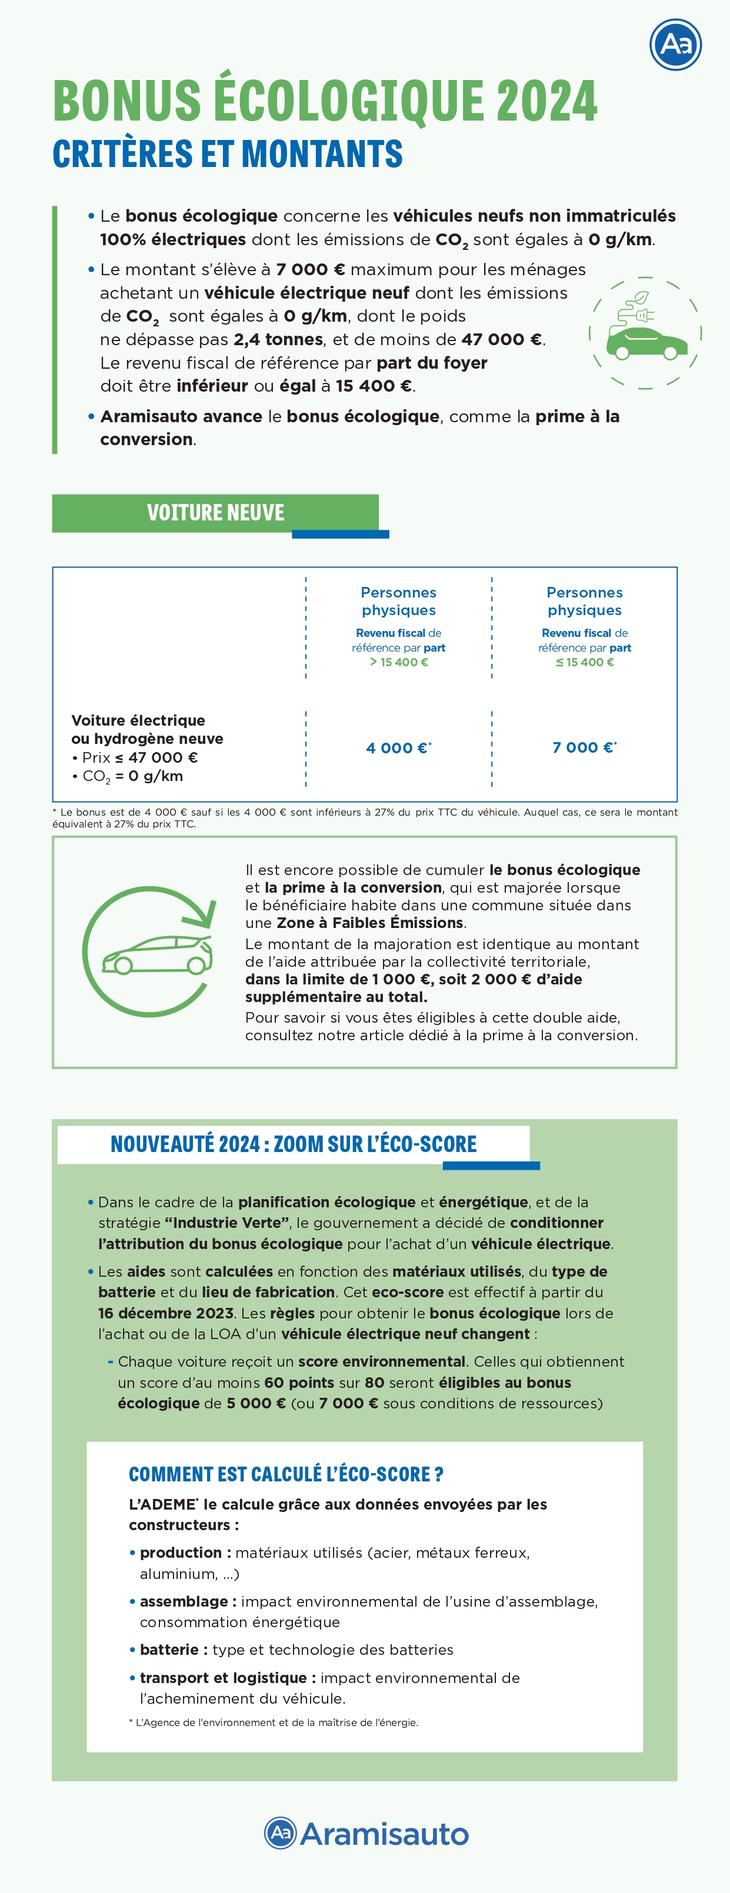 Infographie qui explique les barèmes du bonus écologique de 2024